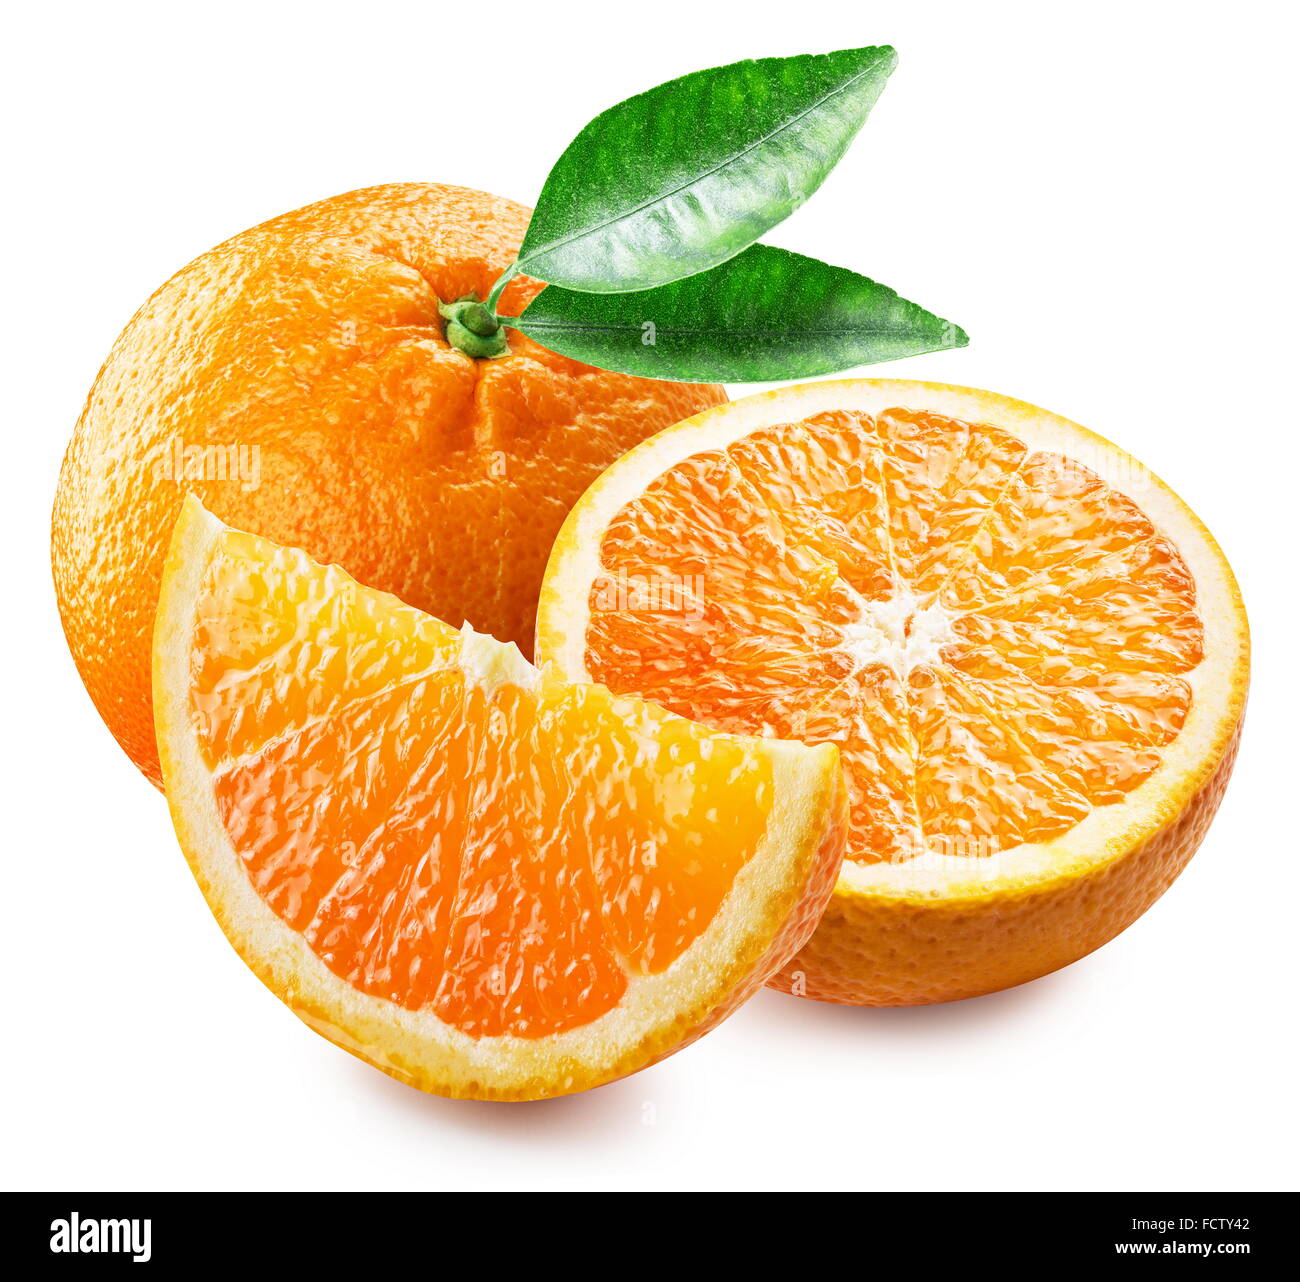 Orange Frucht und Scheiben. Datei enthält Beschneidungspfade. Stockfoto